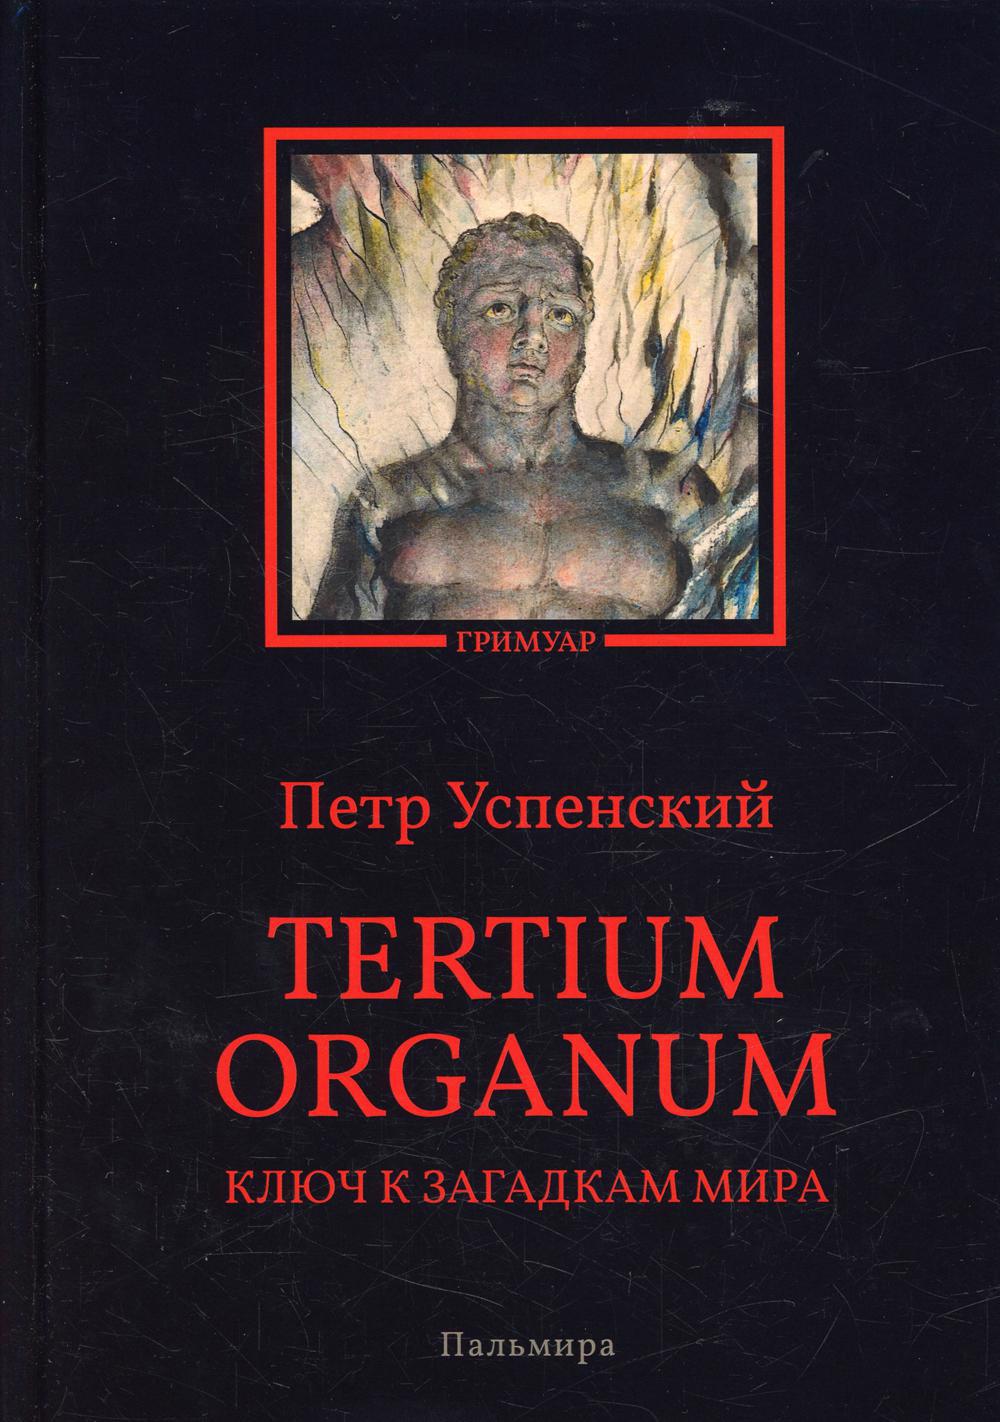 Успенский Петр Демьянович Tertium organum. Ключ к загадкам мира